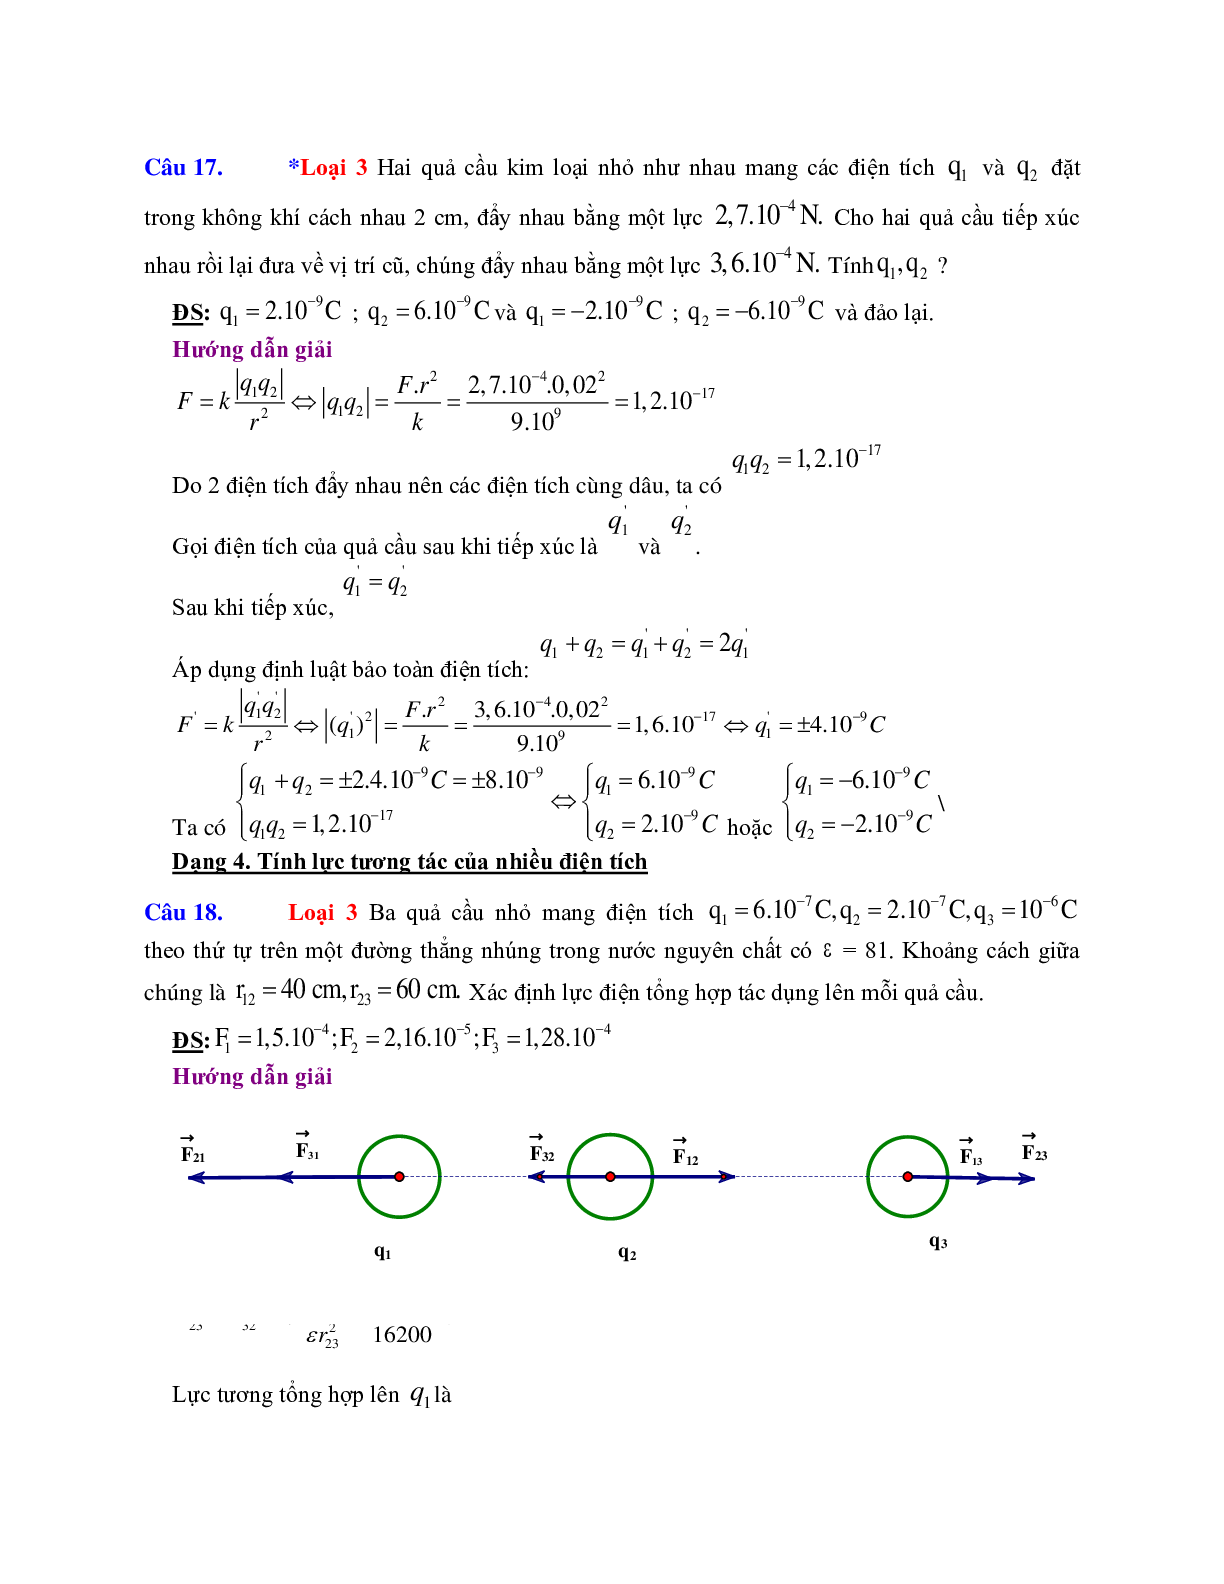 Chuyên đề Điện tích - Điện trường môn Vật lý lớp 11 (trang 7)